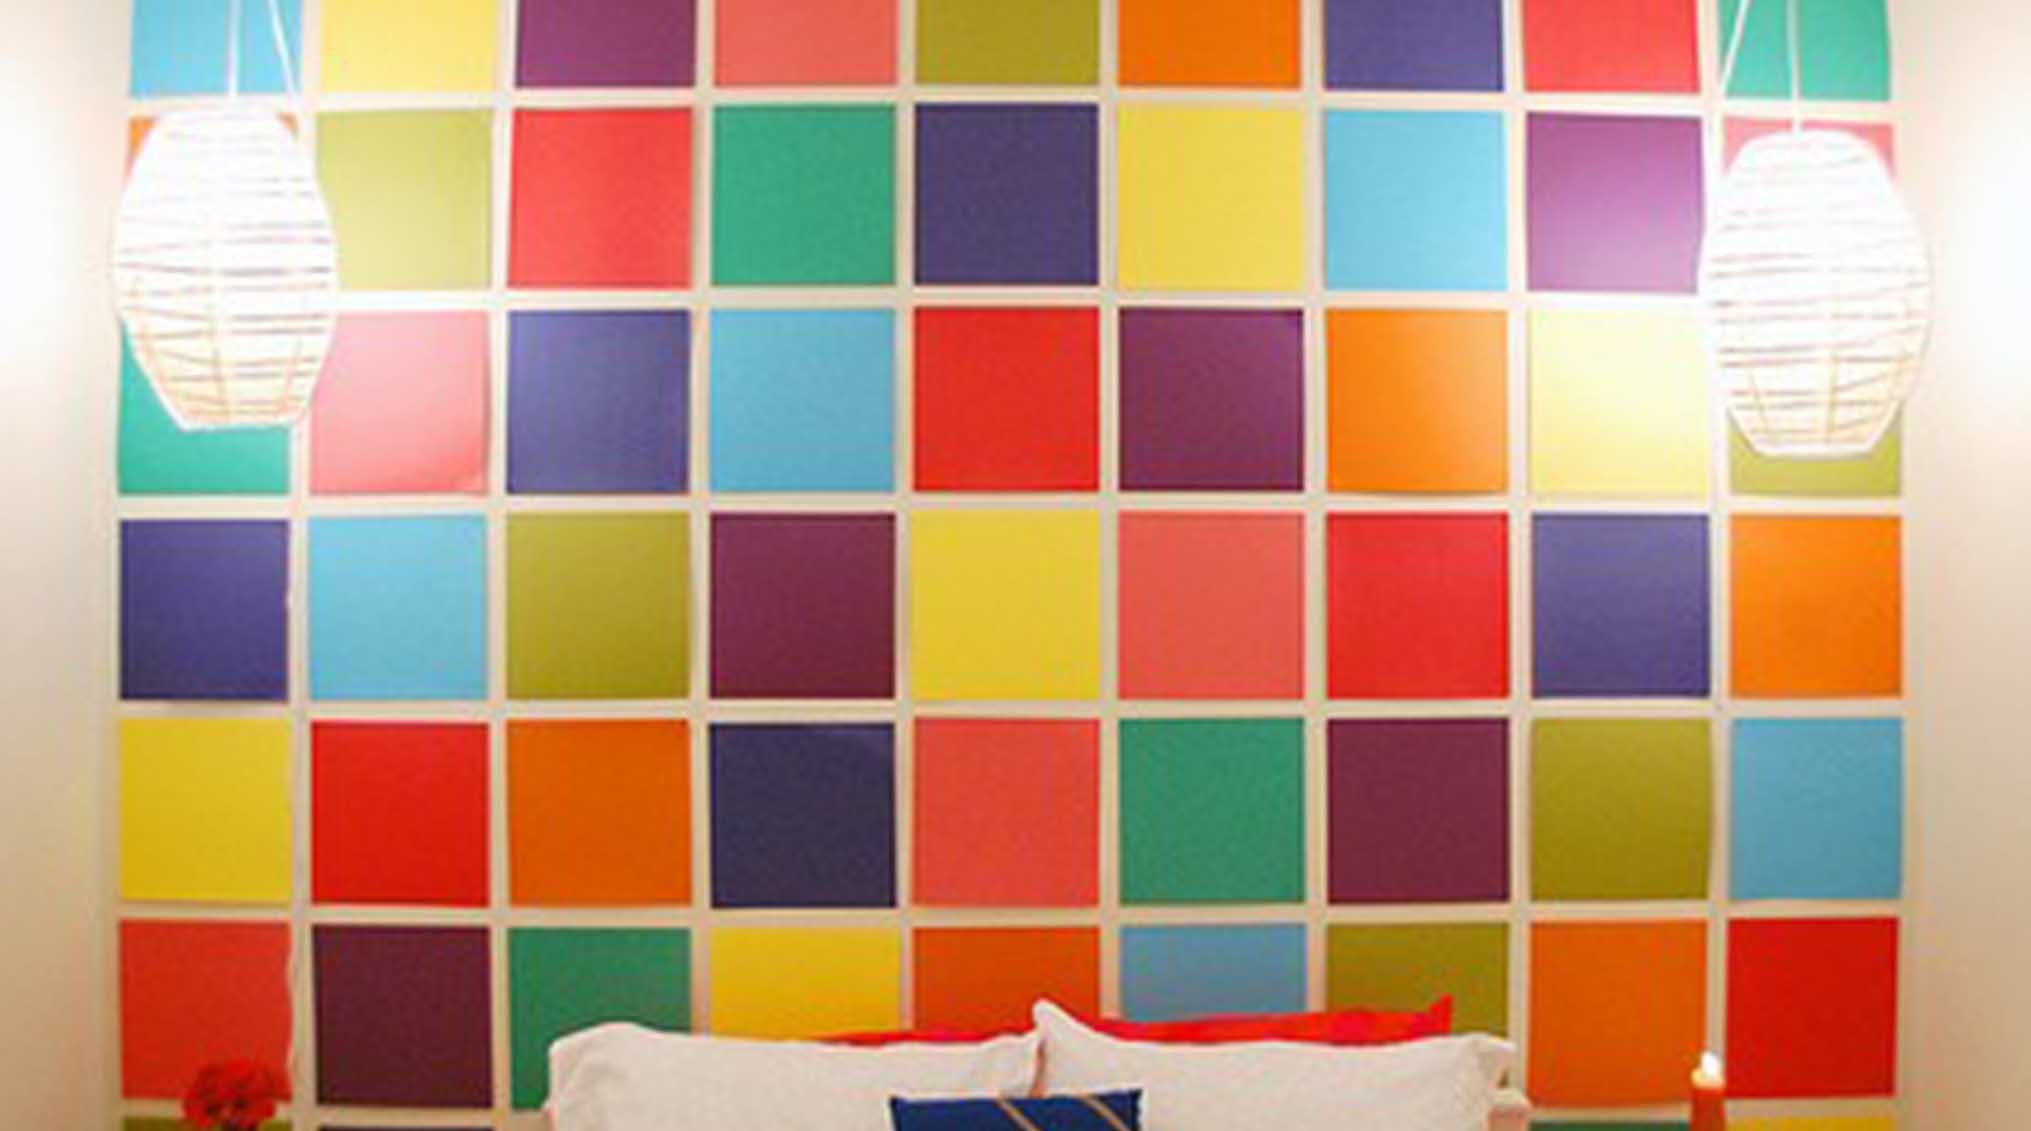 Стена квадратики. Разноцветные стены в интерьере. Разноцветные квадраты на стене. Геометрические фигуры на стене. Покрасить стены в разные цвета.